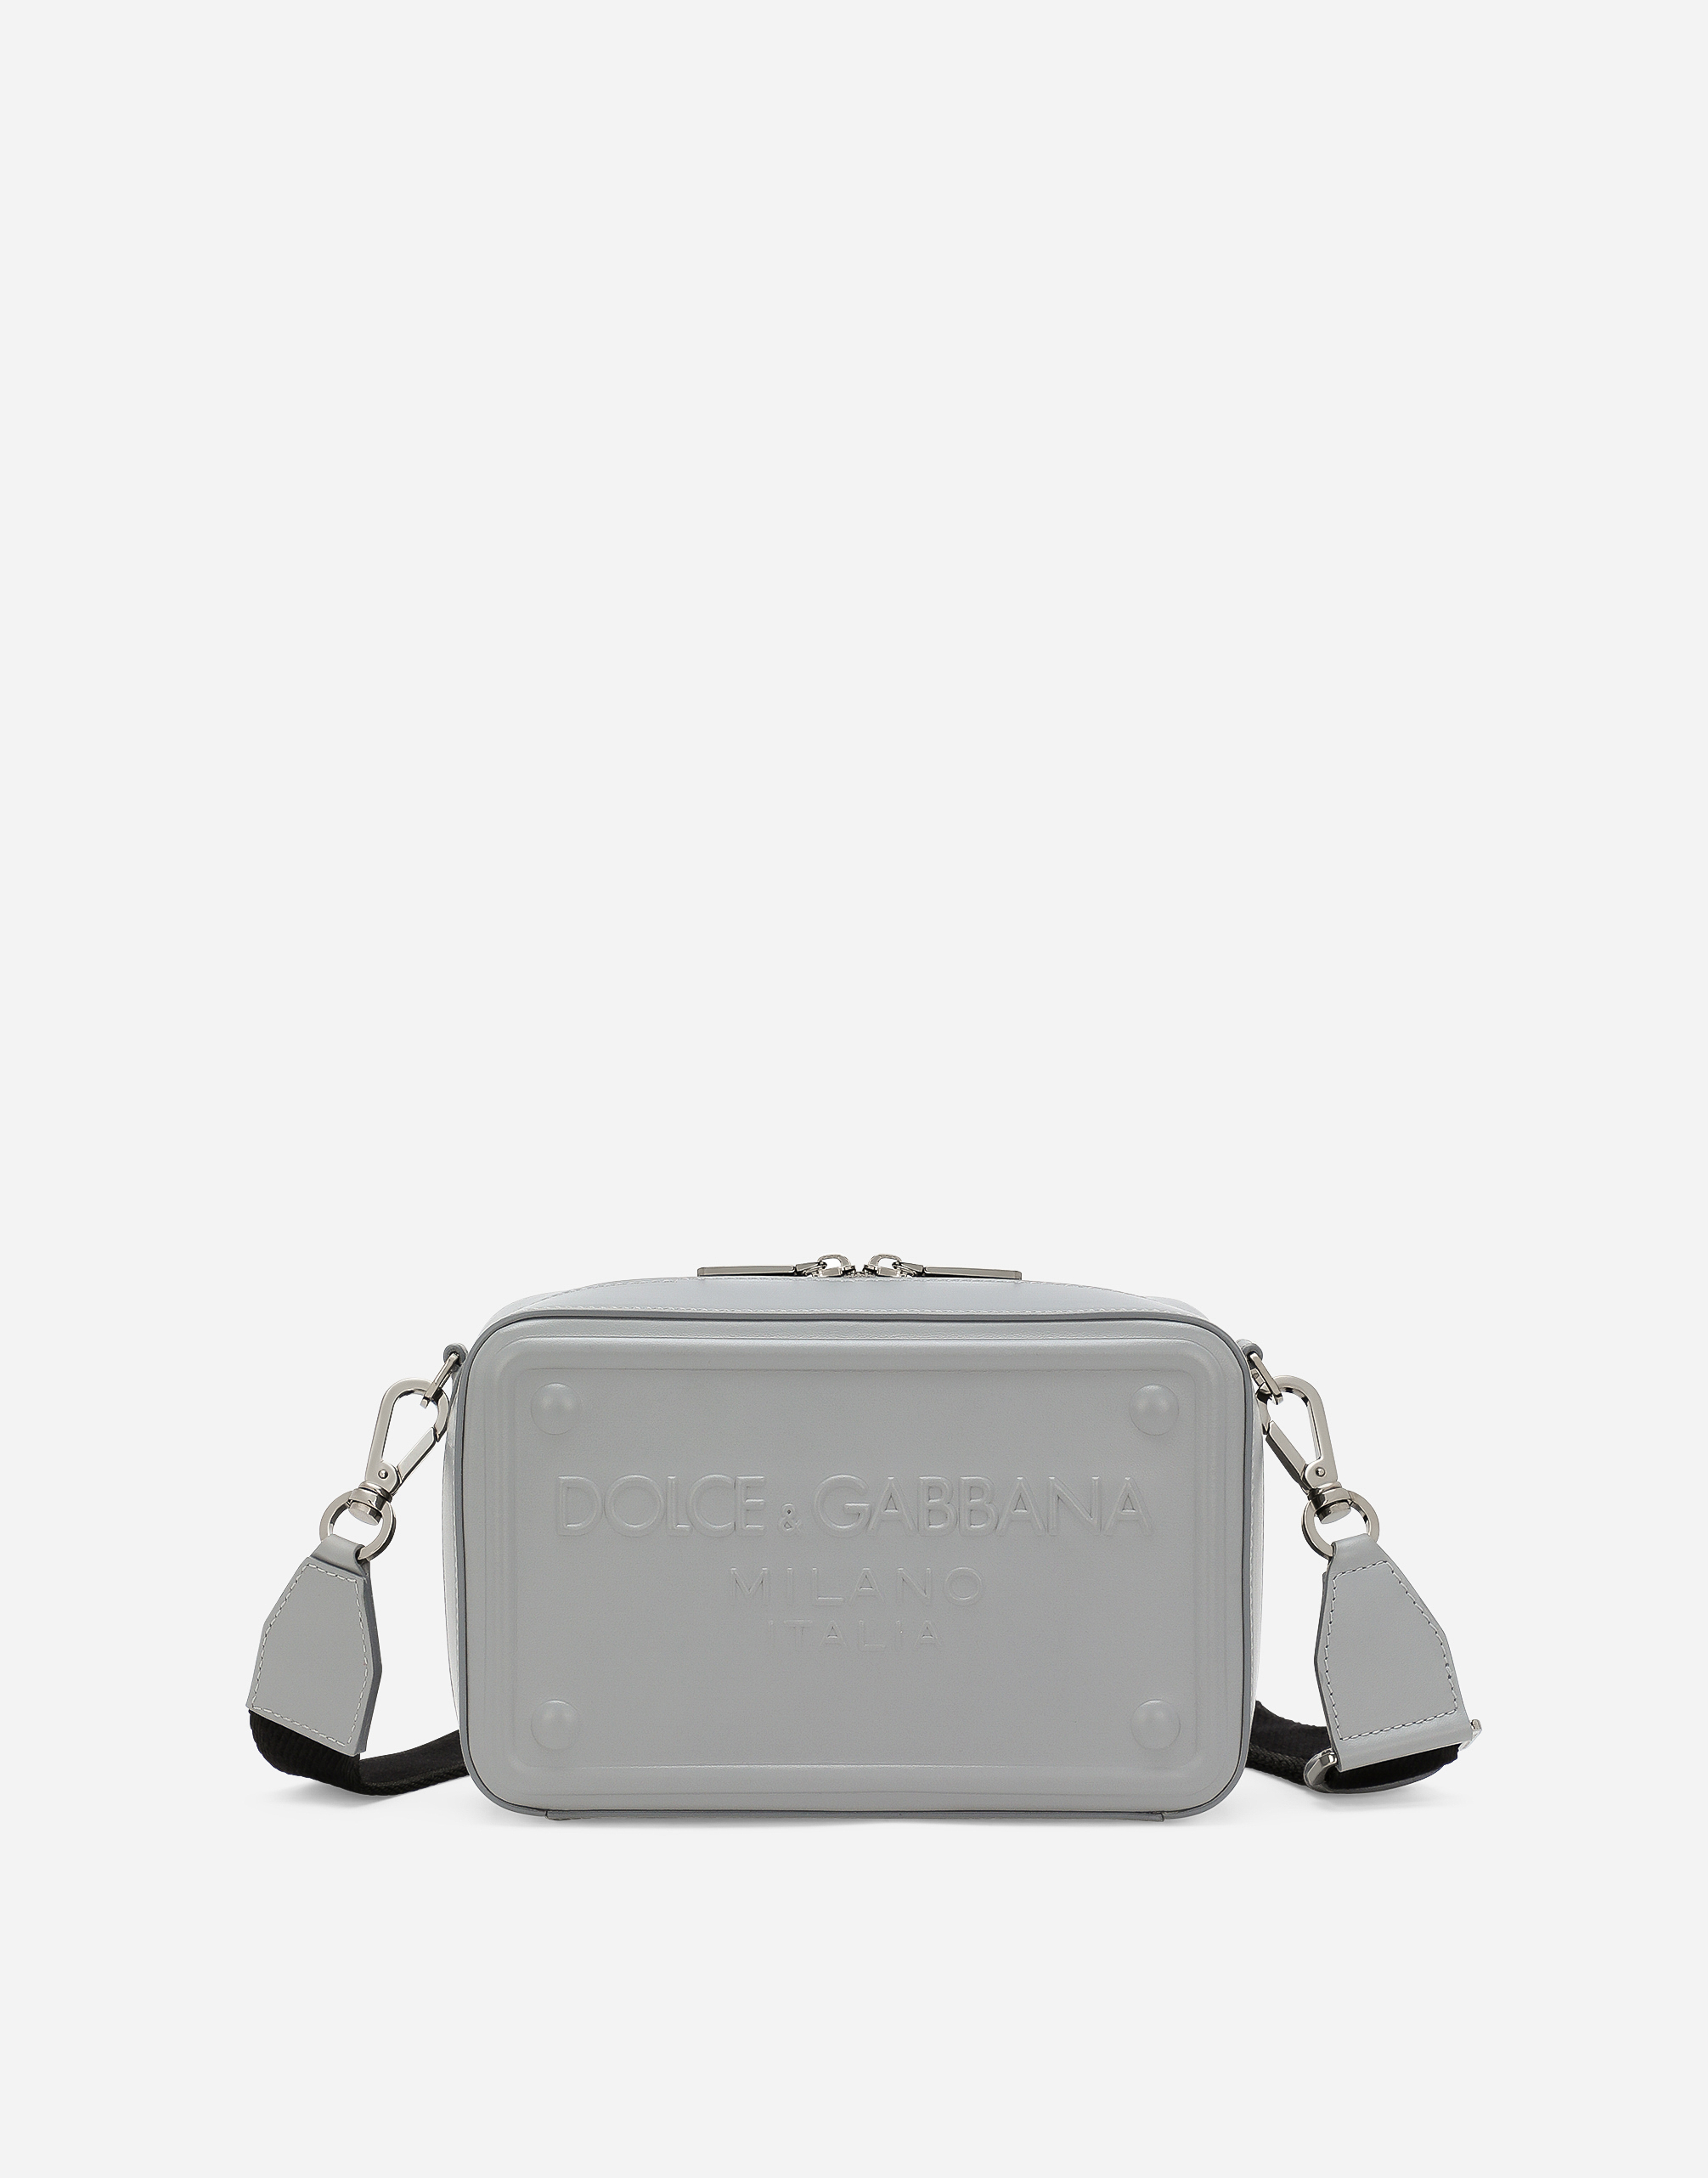 Dolce & Gabbana Calfskin Crossbody Bag In Grey